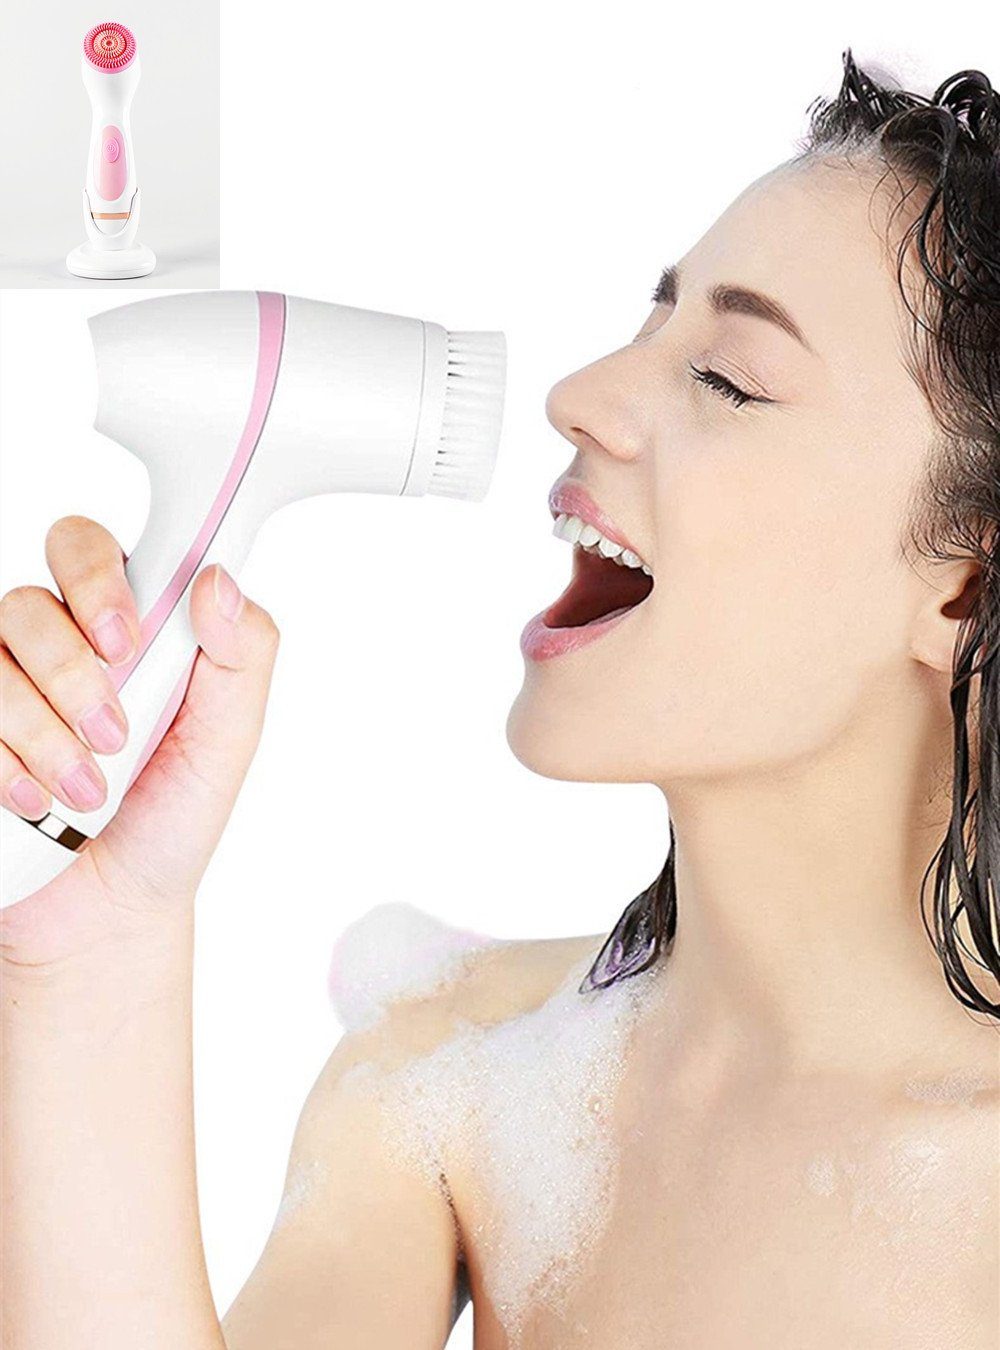 XDeer Gesichtspflege-Set 3 in 1 Elektrische Gesichtsbürste Gesichtsreinigungsbürste, Wiederaufladbares Gesichtsreinigungsset Schmutzablösung Ölentfernung Pink